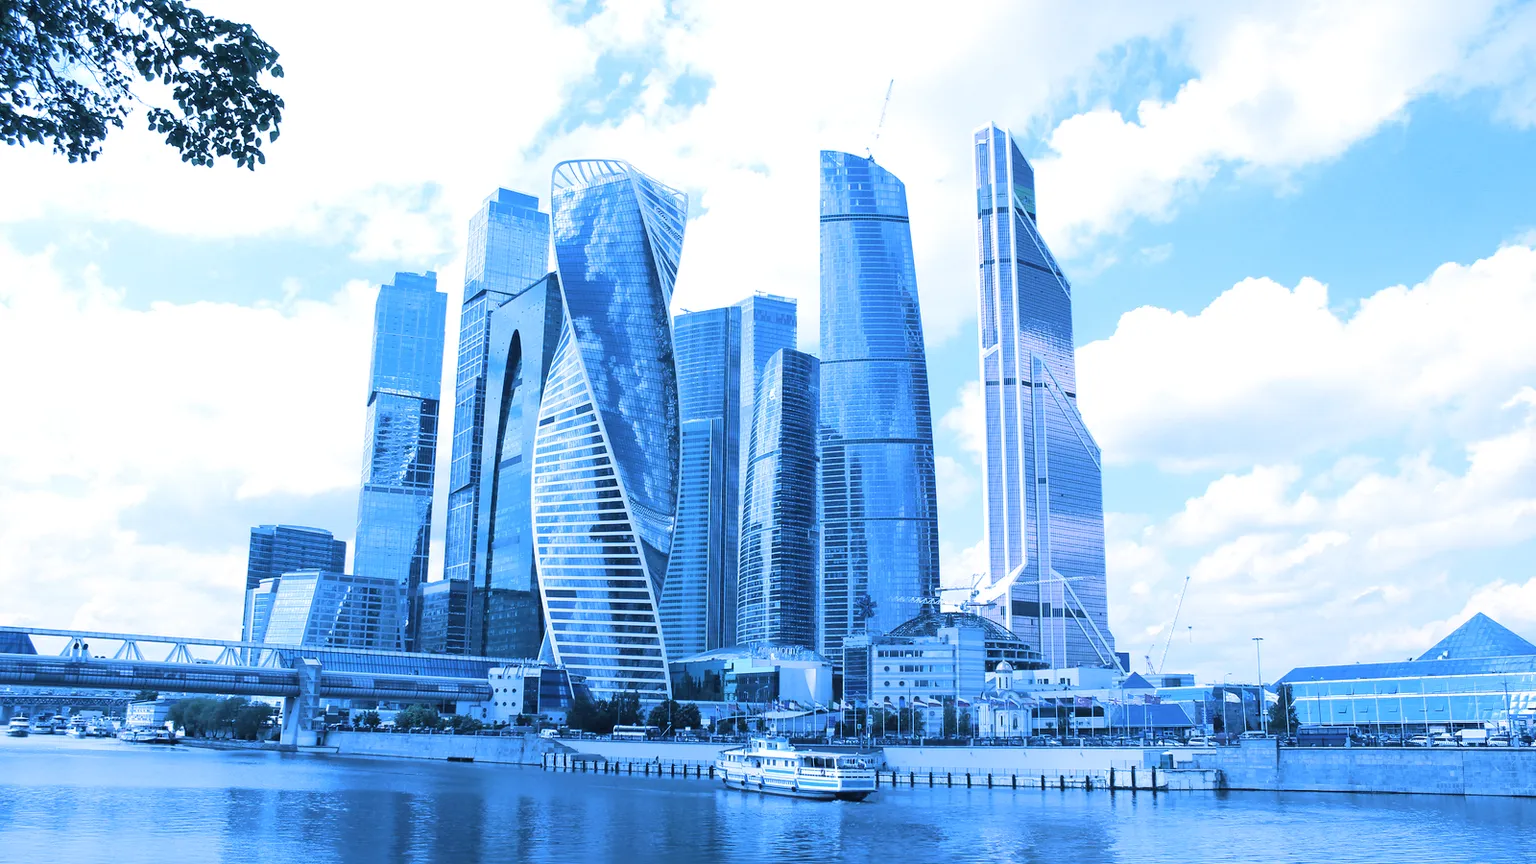 La Torre de la Federación está situada en el distrito de negocios de Moscú. Imagen: Shutterstock